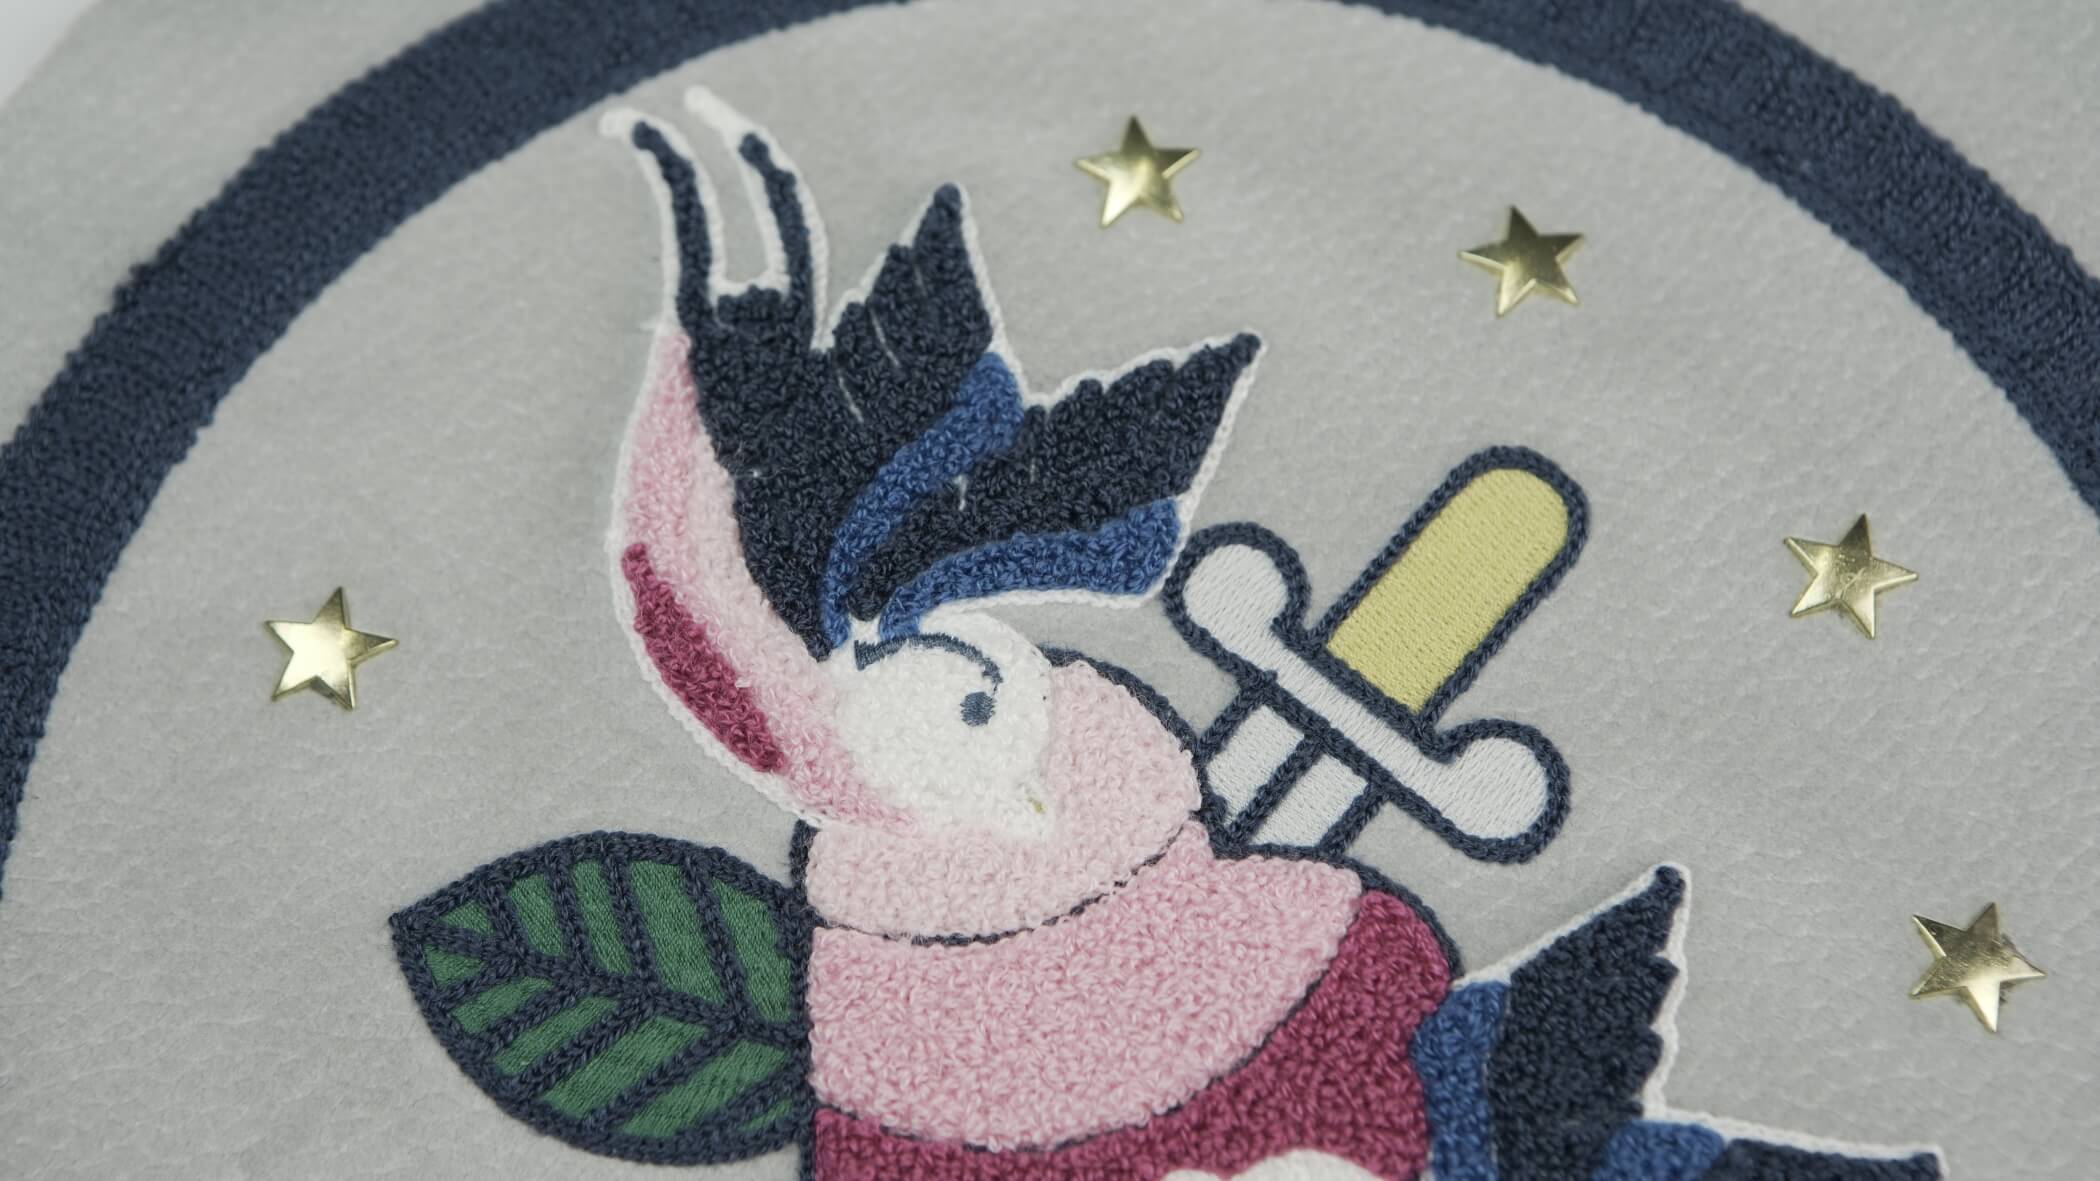 Bordado de Ponto Alto - Chenille com um desenho onde se vê uma adaga espetada num coração, um pássaro e uma folha de árvore ou planta